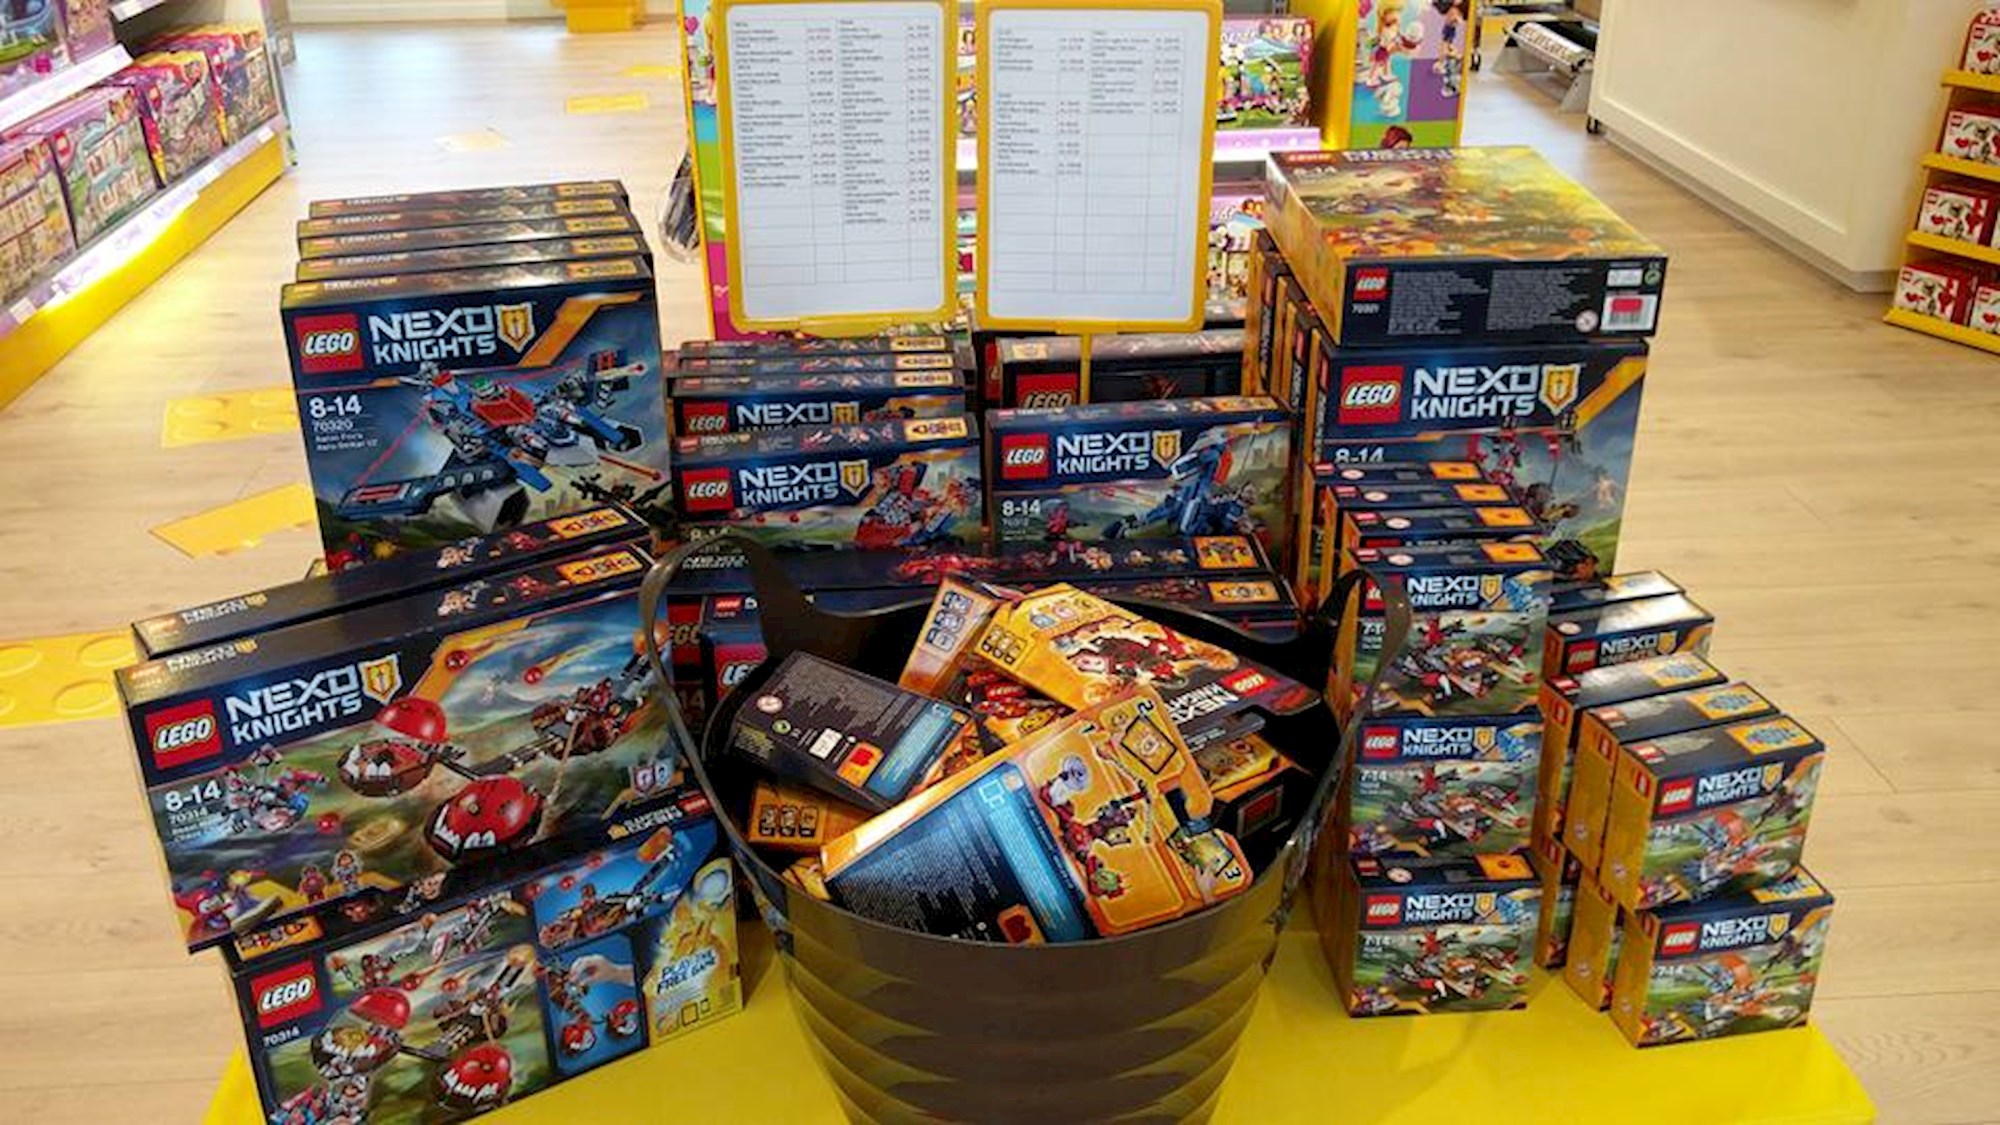 LEGO butikken | Planlæg dit besøg i Bredebro Discover Denmark